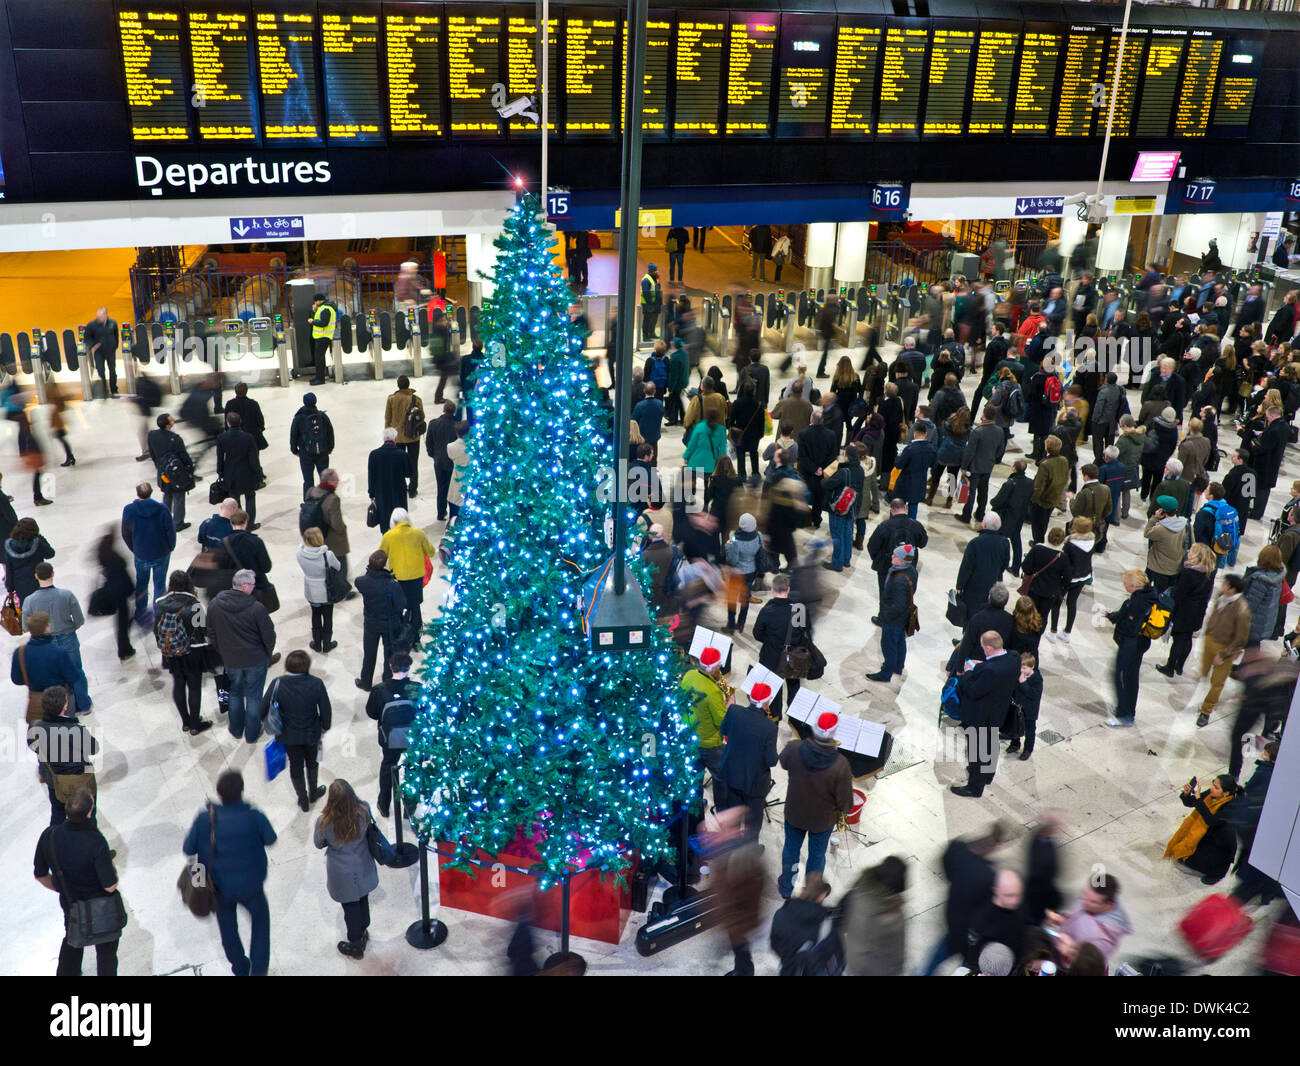 LA STAZIONE DI WATERLOO SI TROVA NEI PENDOLARI DI NATALE, con vista elevata dell'affollato atrio e delle partenze, si imbarchera presso la stazione di Waterloo a Christmas London SE1 Foto Stock